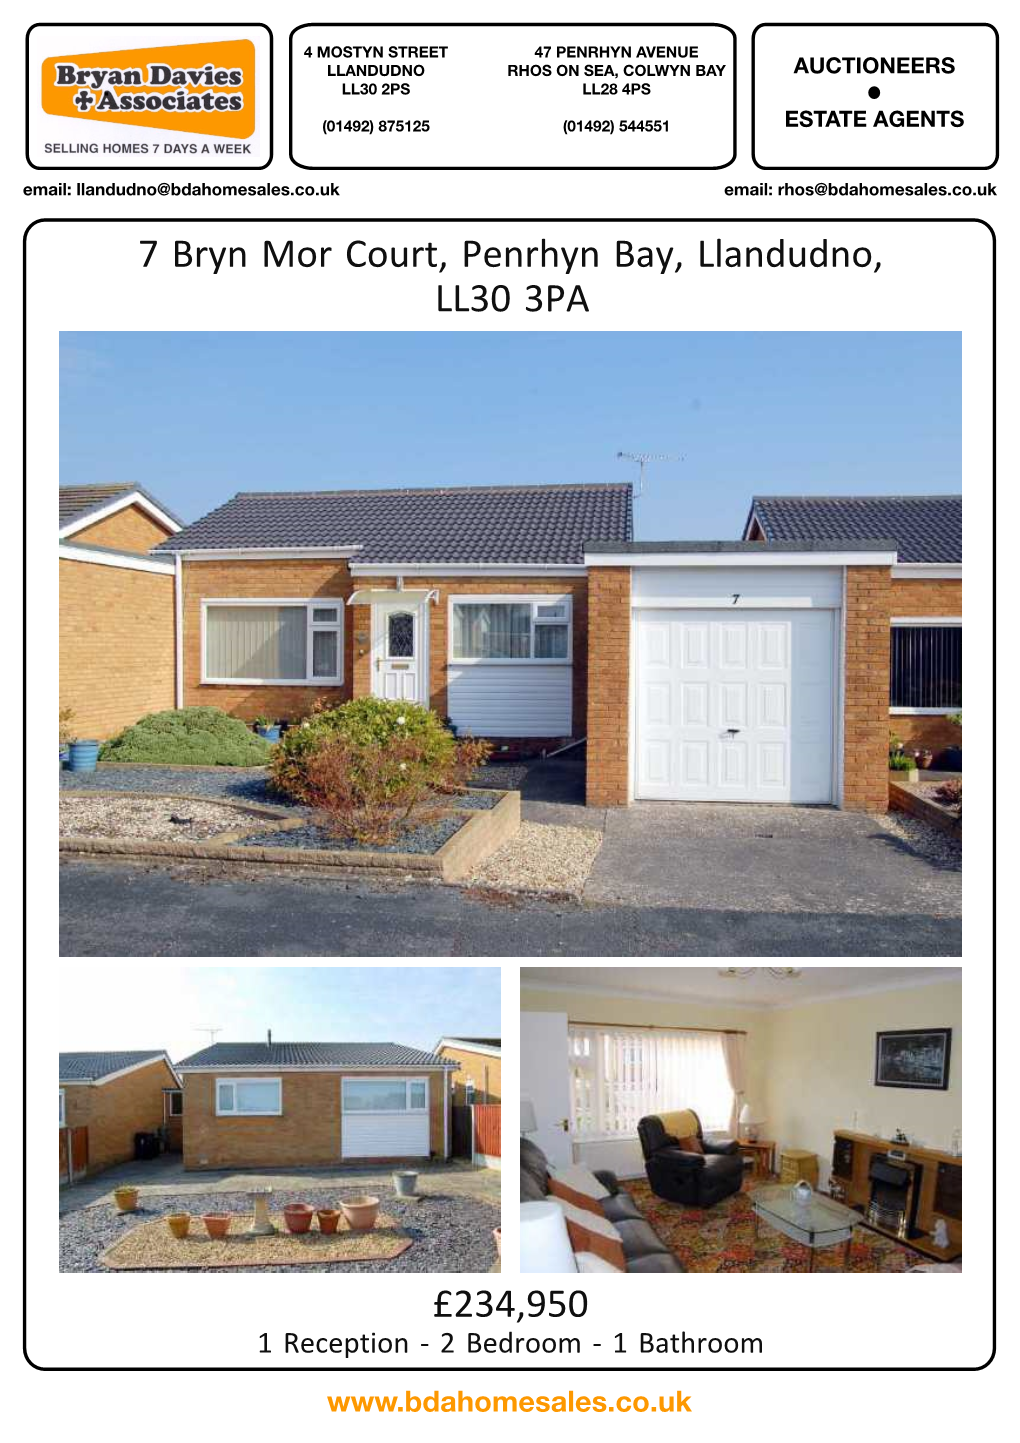 7 Bryn Mor Court, Penrhyn Bay, Llandudno, LL30 3PA £234,950